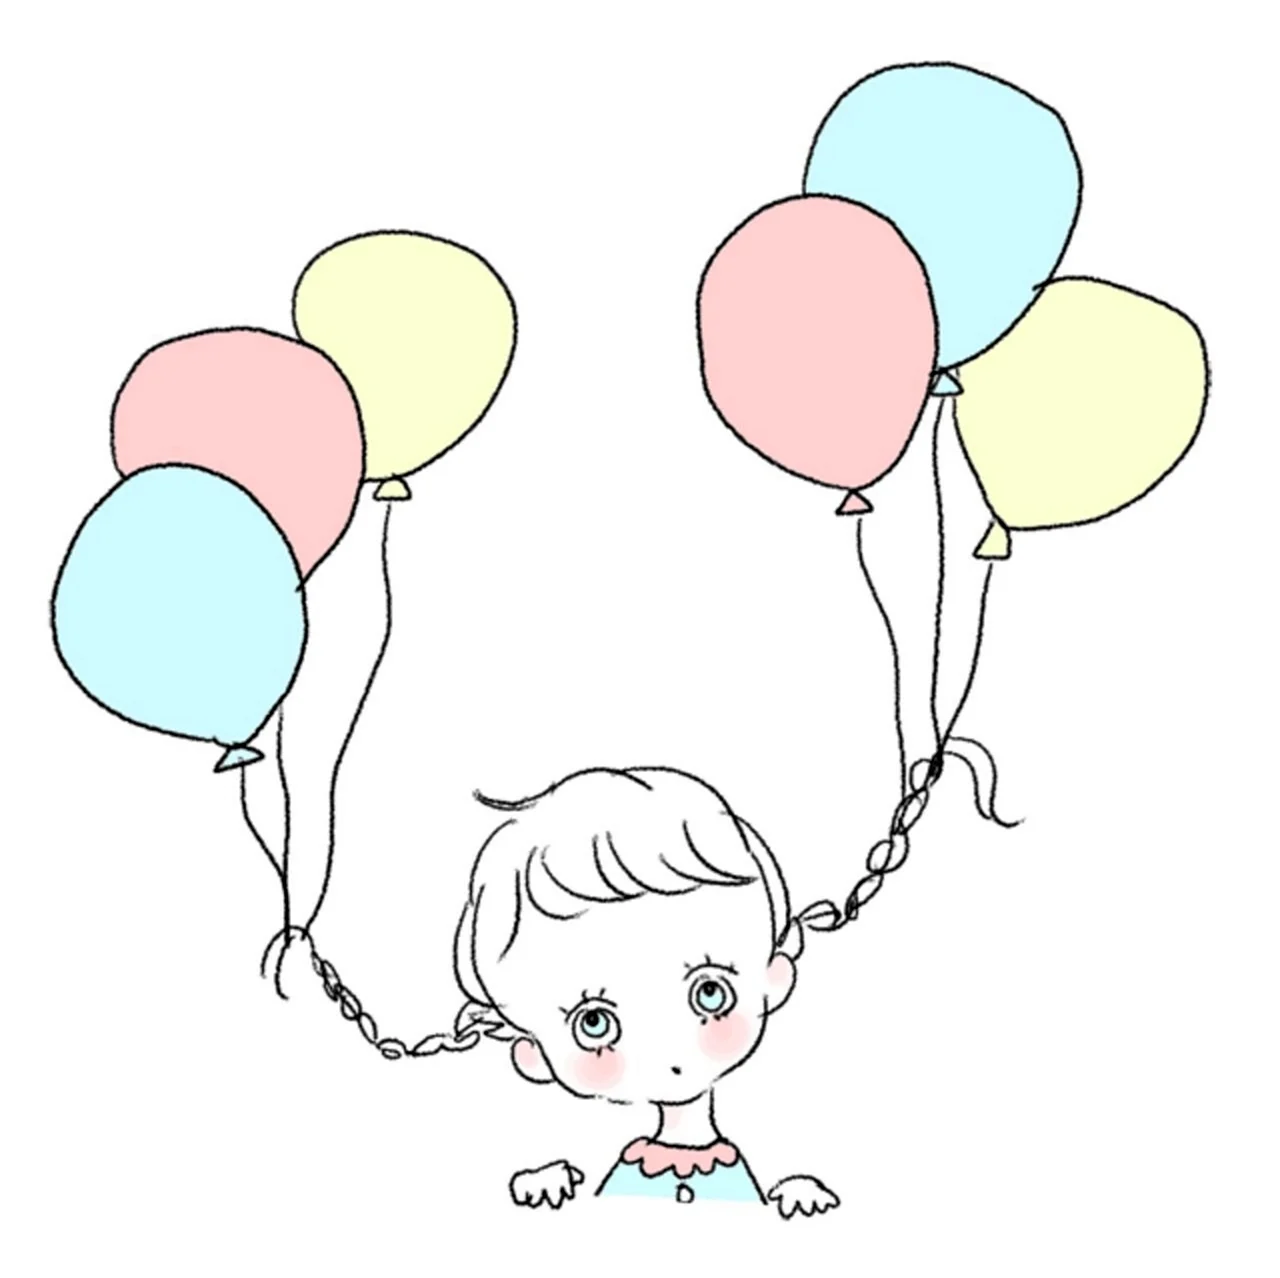 A child with Balloons детский рисунок. Для срисовки